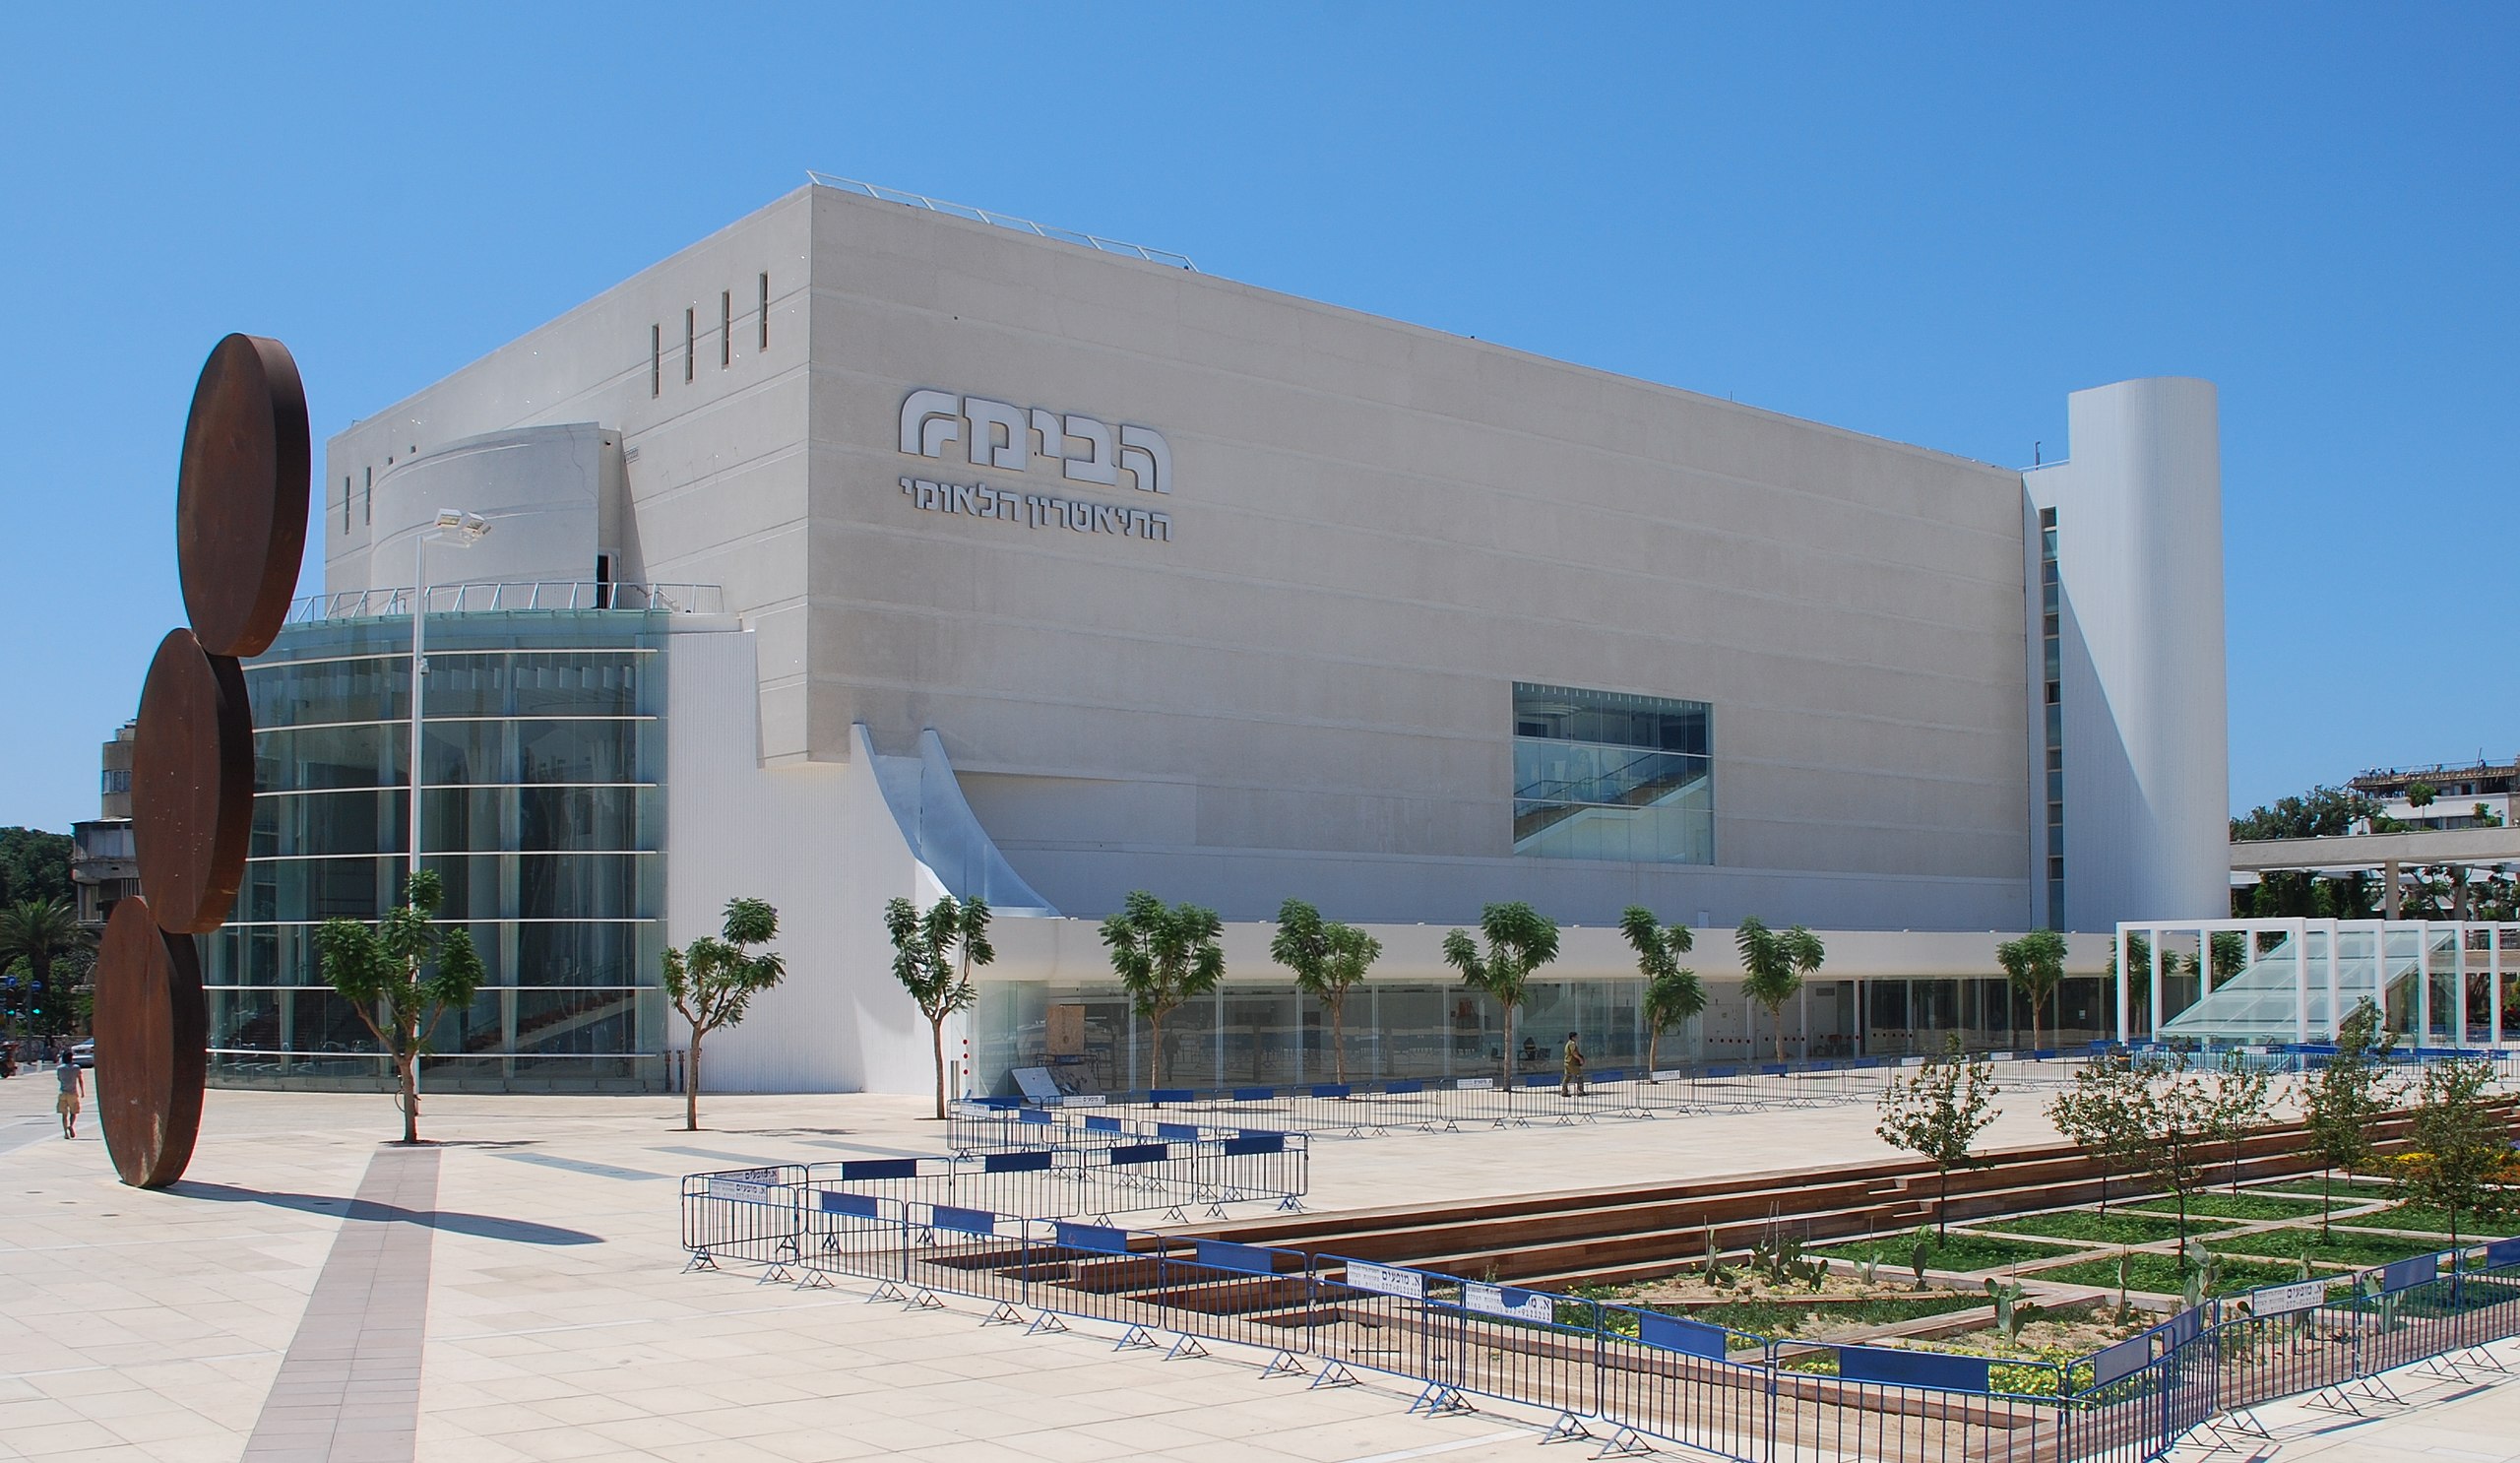 Театр Габима в Тель-Авиве, Израиль. Фото: Википедия